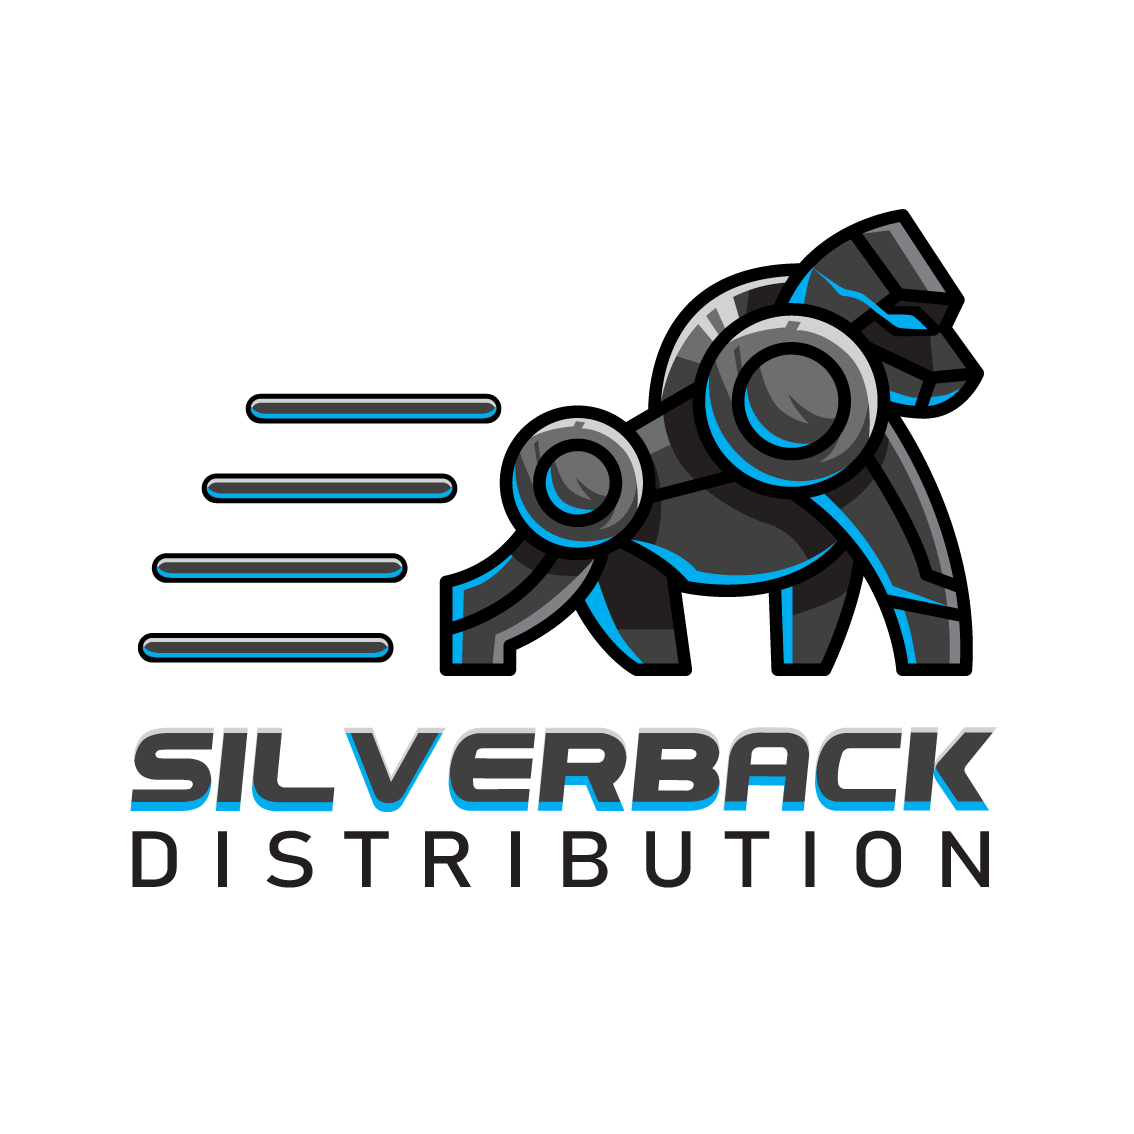 Silverback Distribution